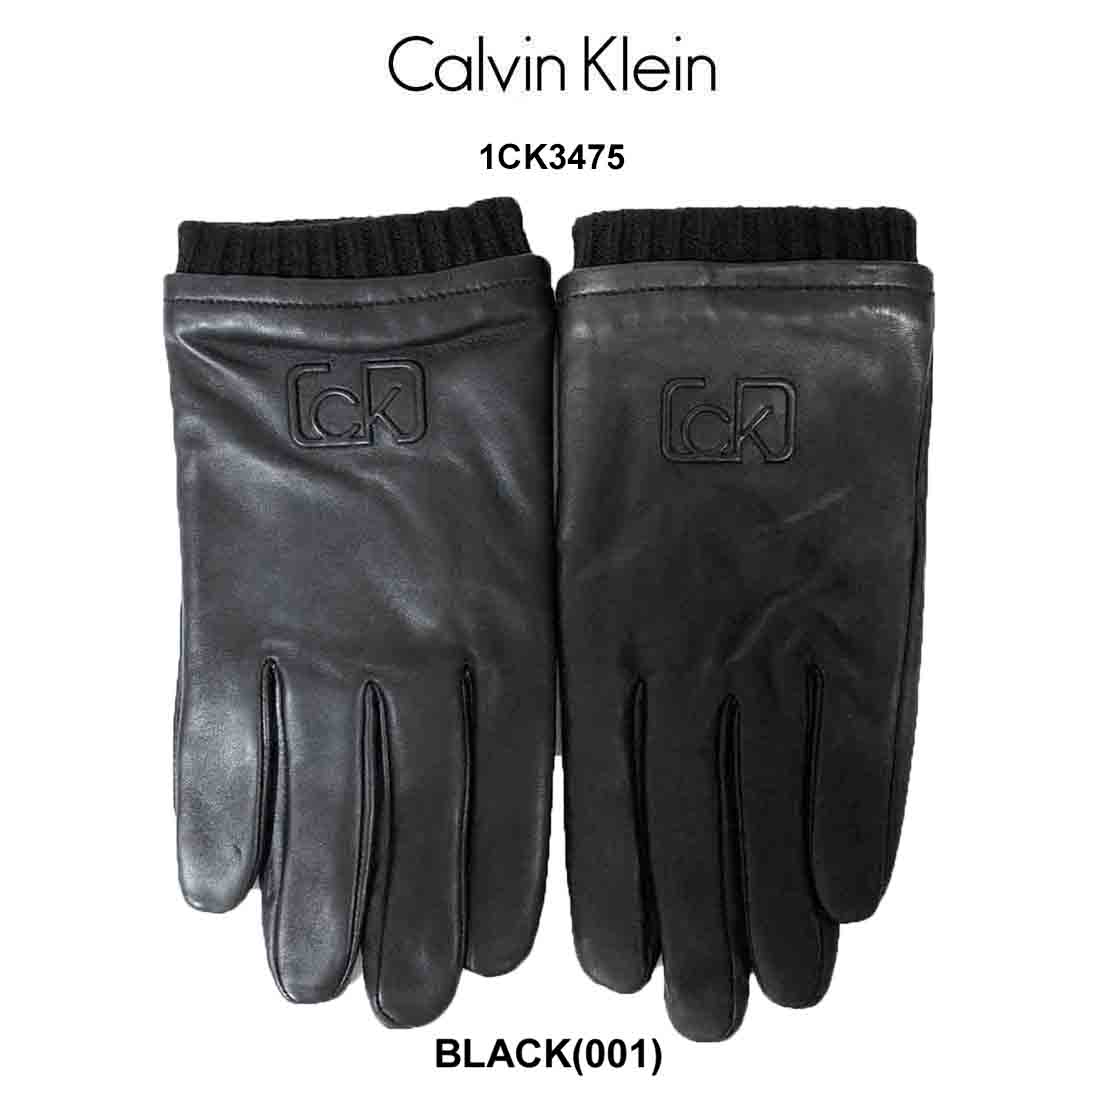 送料無料 並行輸入品 Calvin Klein カルバンクライン タッチグローブ スマホ 手袋 レザー メンズ 1ck3475